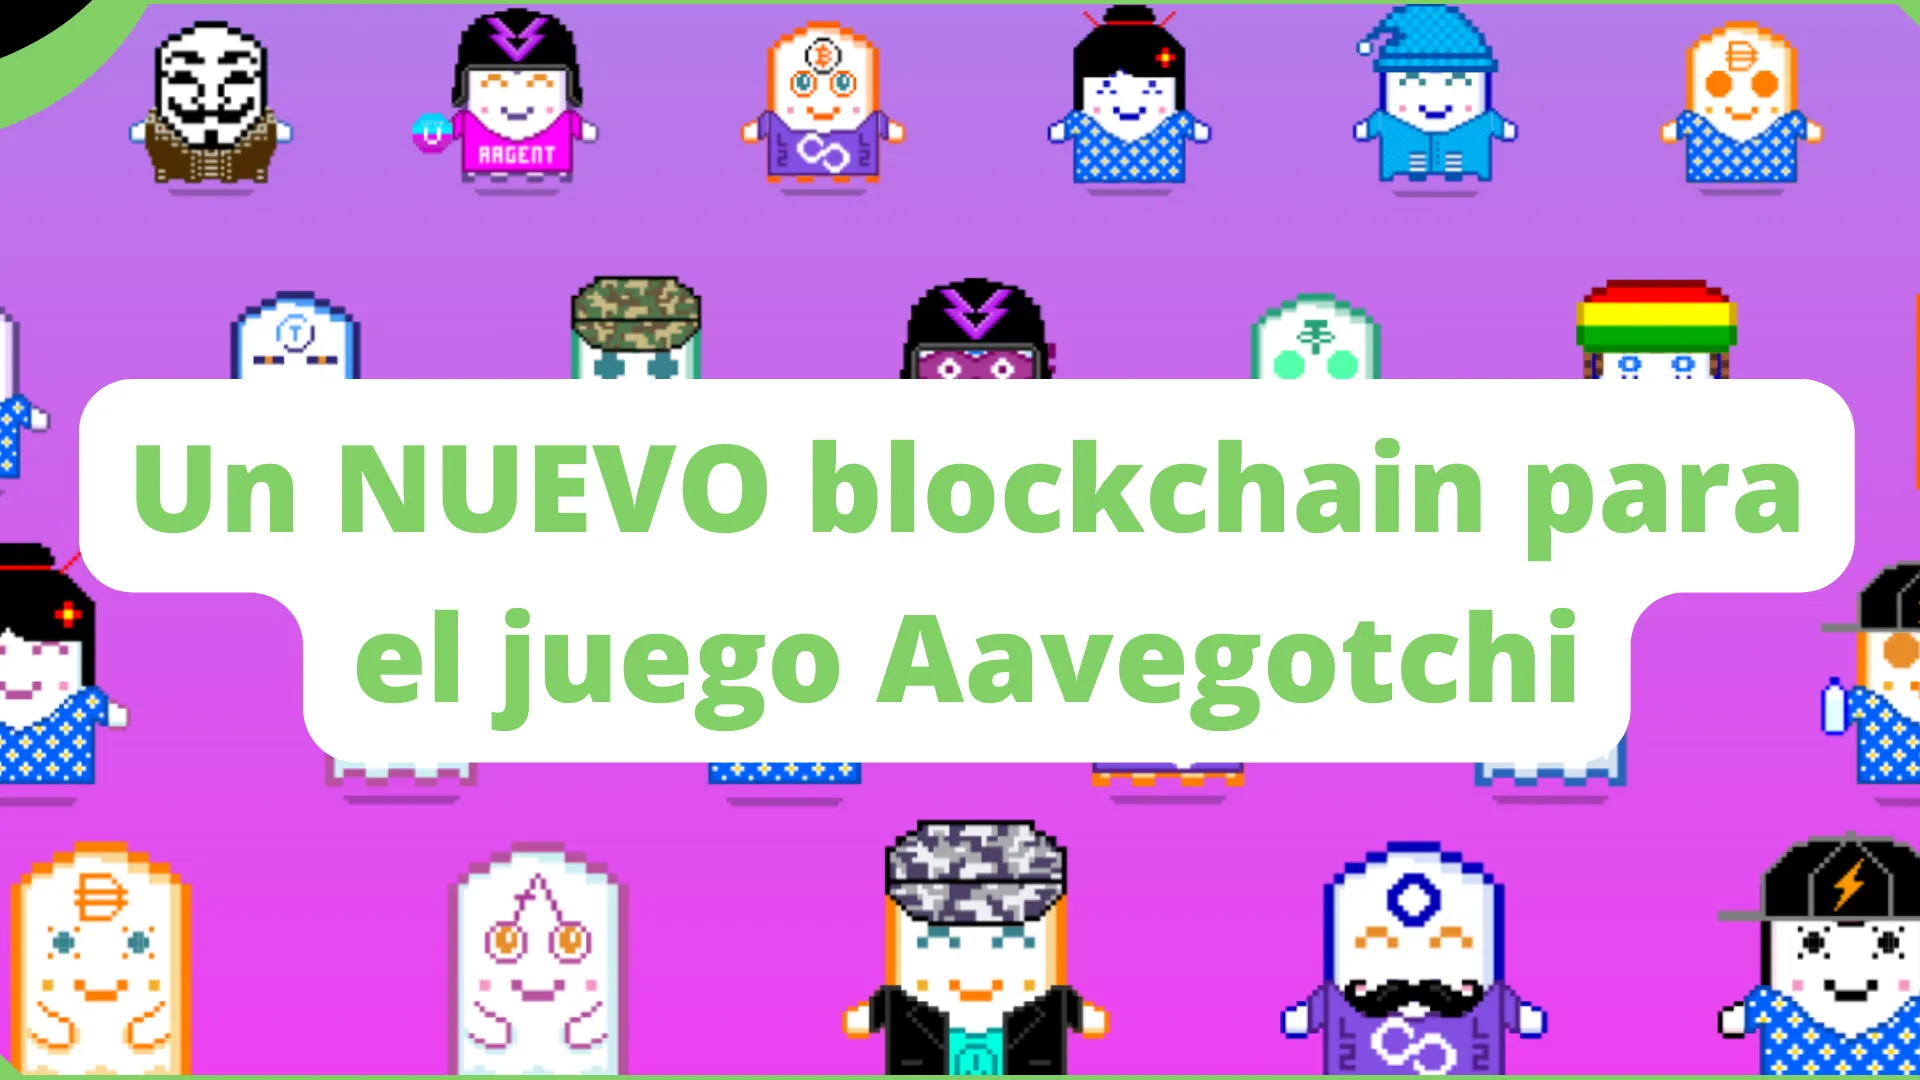 Un nuevo blockchain para el juego Aavegotchi.